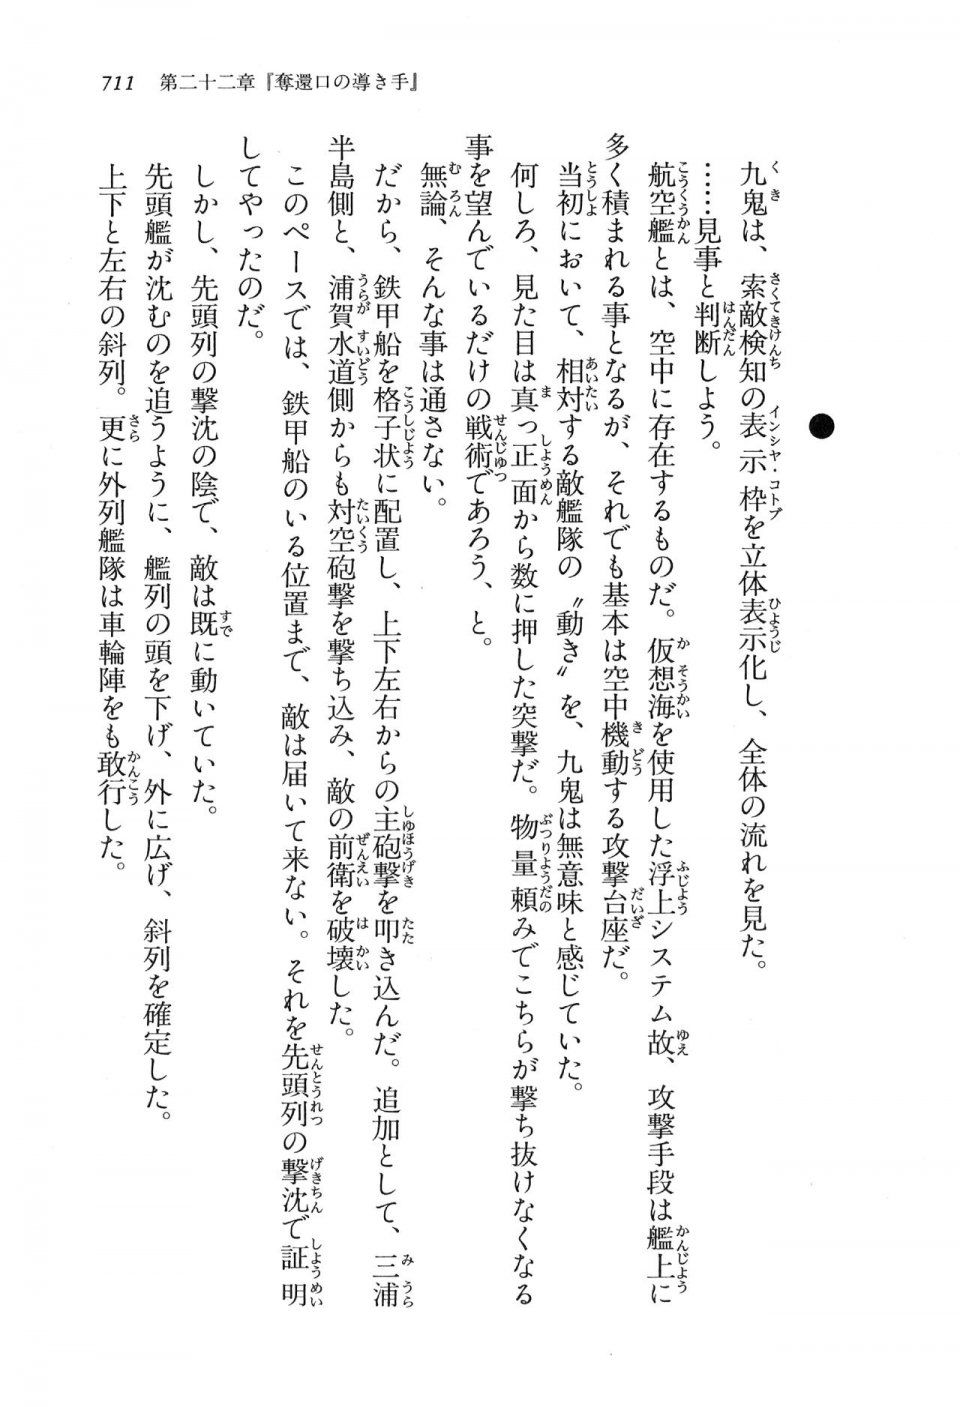 Kyoukai Senjou no Horizon LN Vol 16(7A) - Photo #711